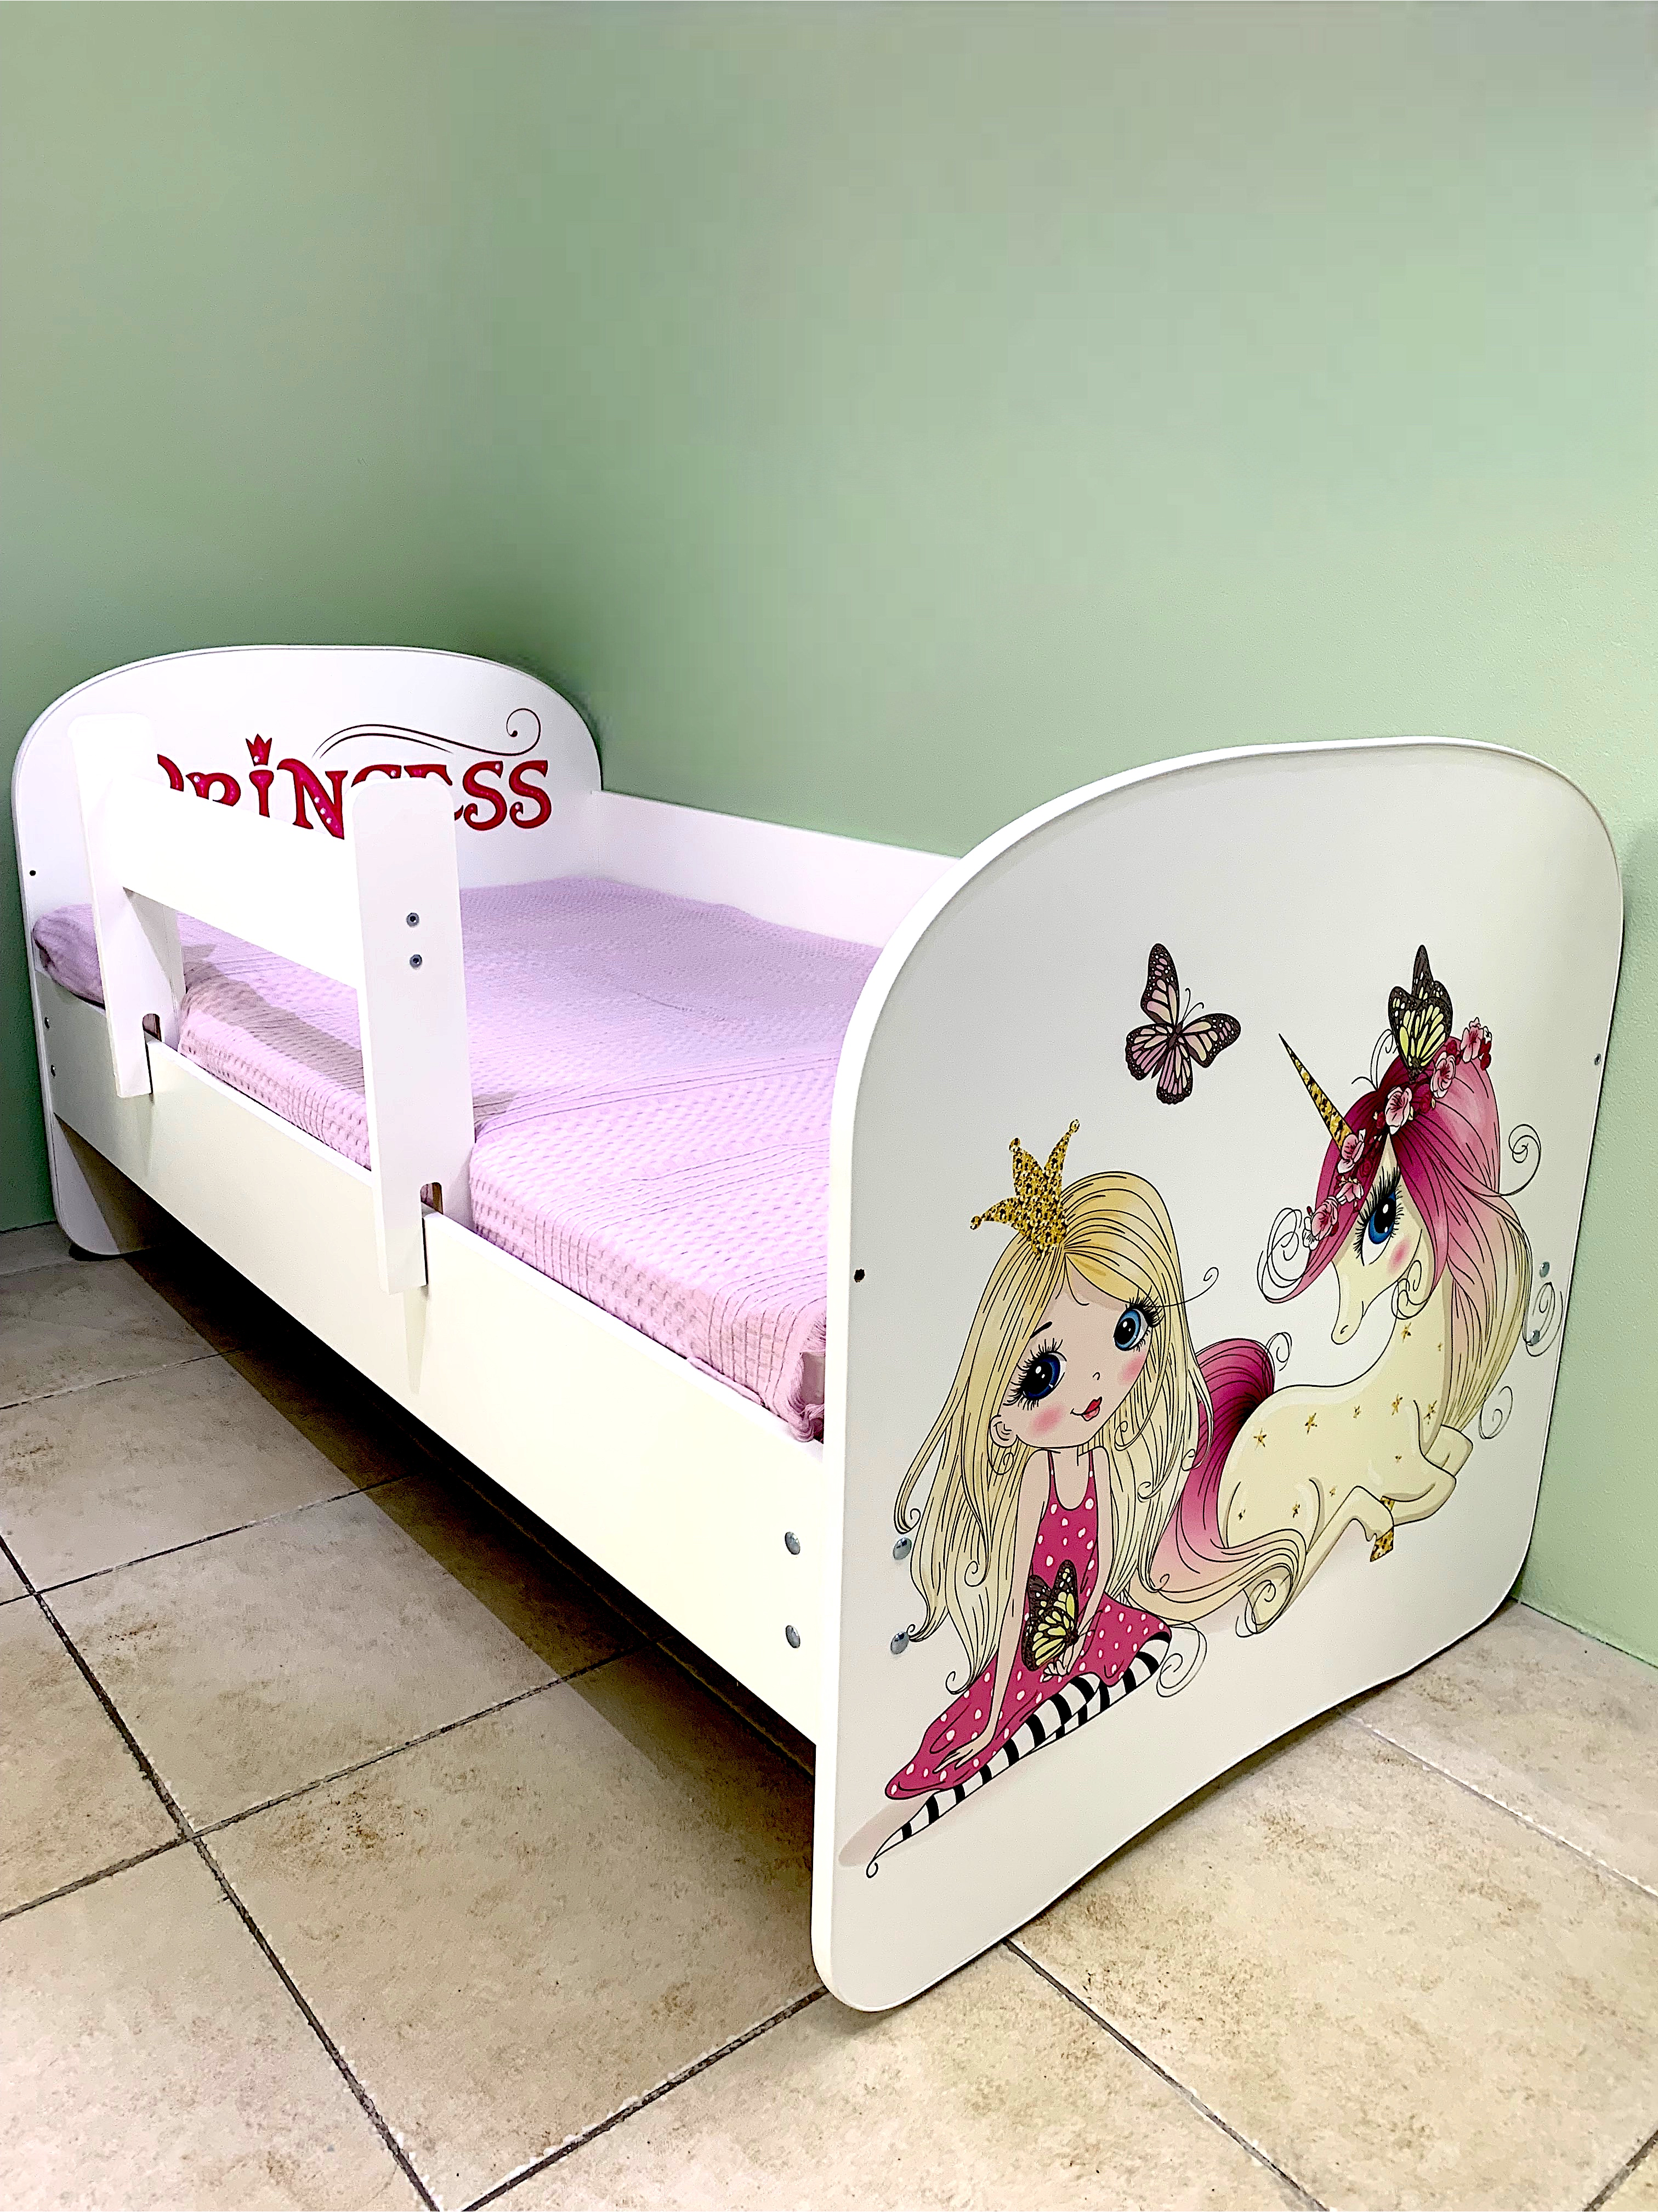 Кровать детская Принцесса